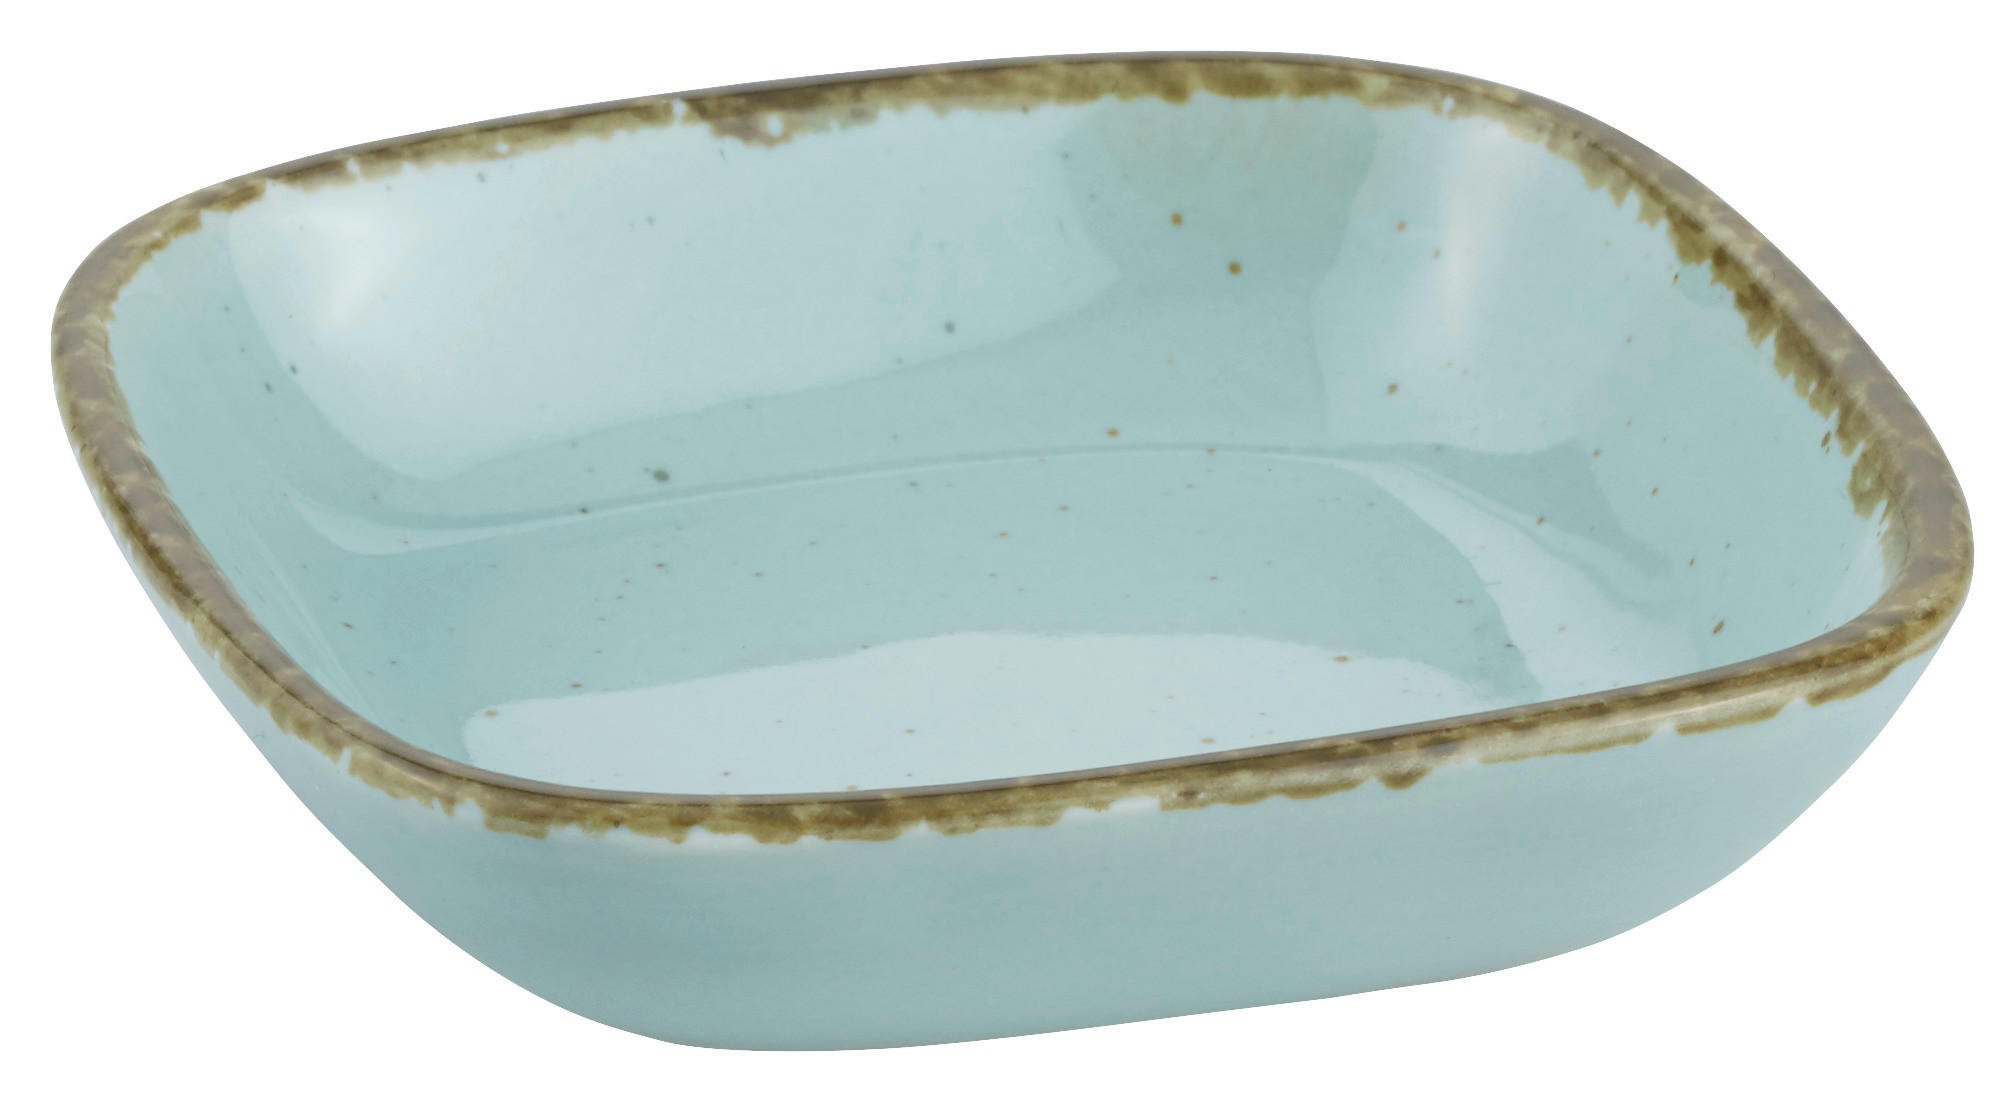 DIPSCHALE Keramik Porzellan  - Hellblau, Basics, Keramik (10cm) - Ritzenhoff Breker